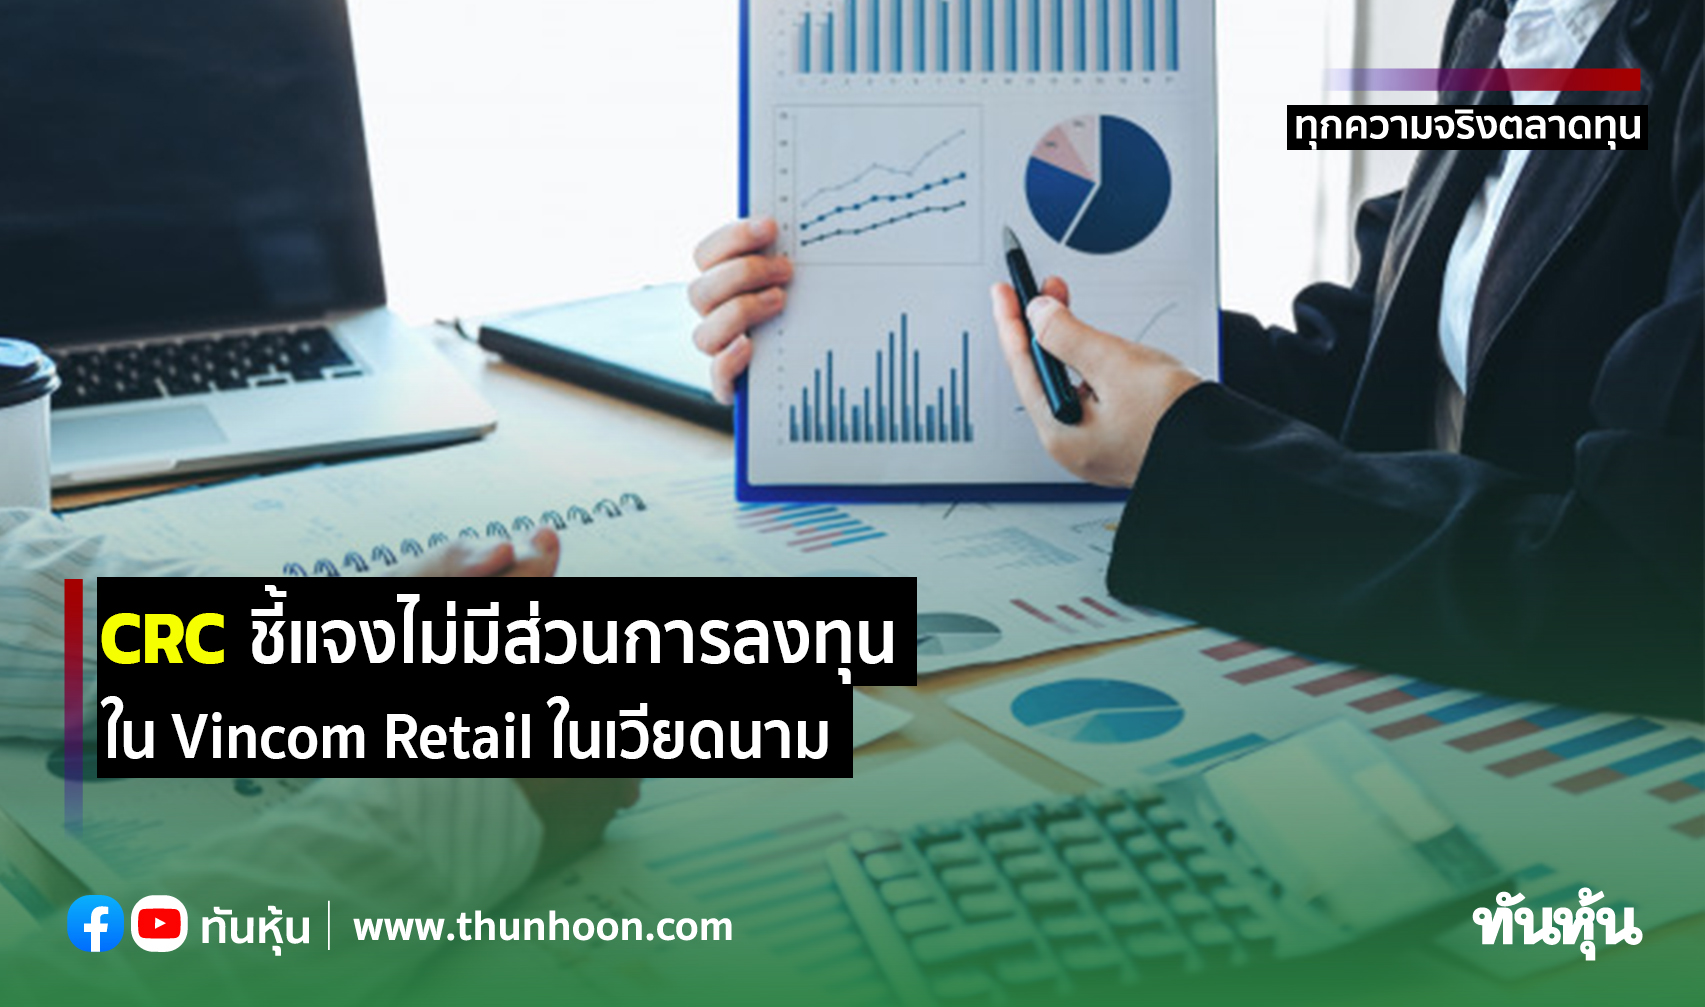 CRC ชี้แจงไม่มีส่วนการลงทุนใน Vincom Retail ในเวียดนาม